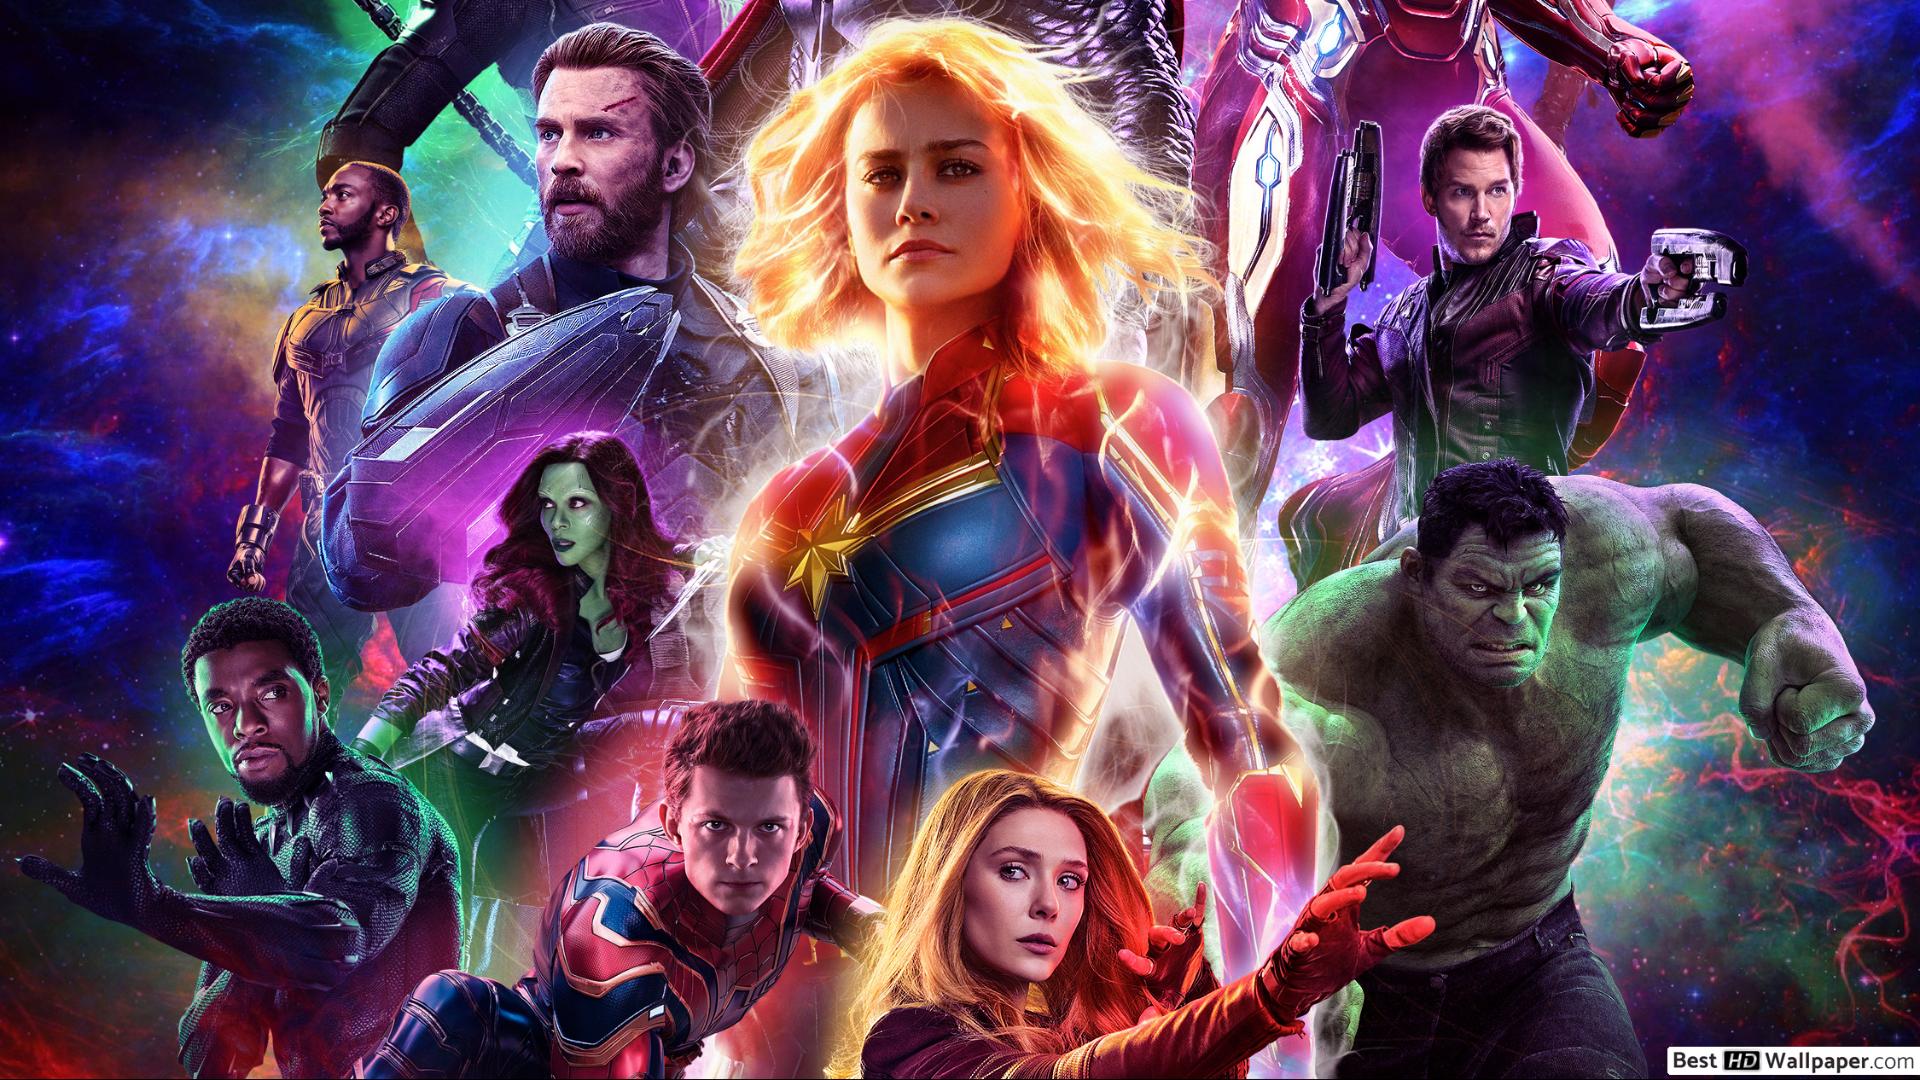 Avengers: Endgame – affittato un cinema per i malati di cancro